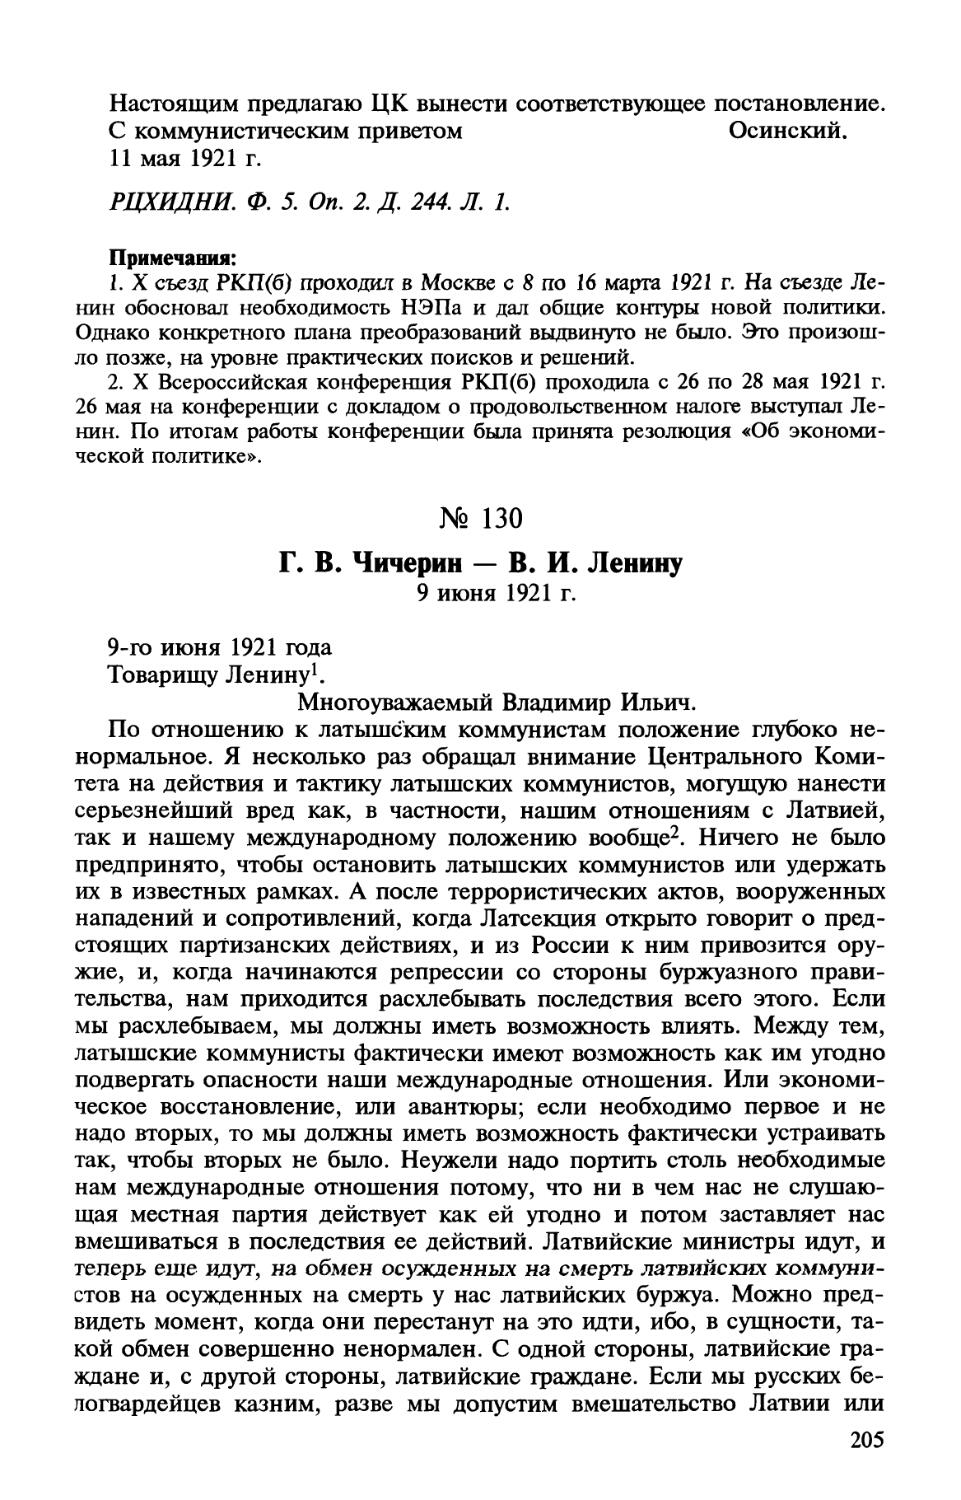 130. Г. В. Чичерин — В. И. Ленину. 9 июня 1921 г.